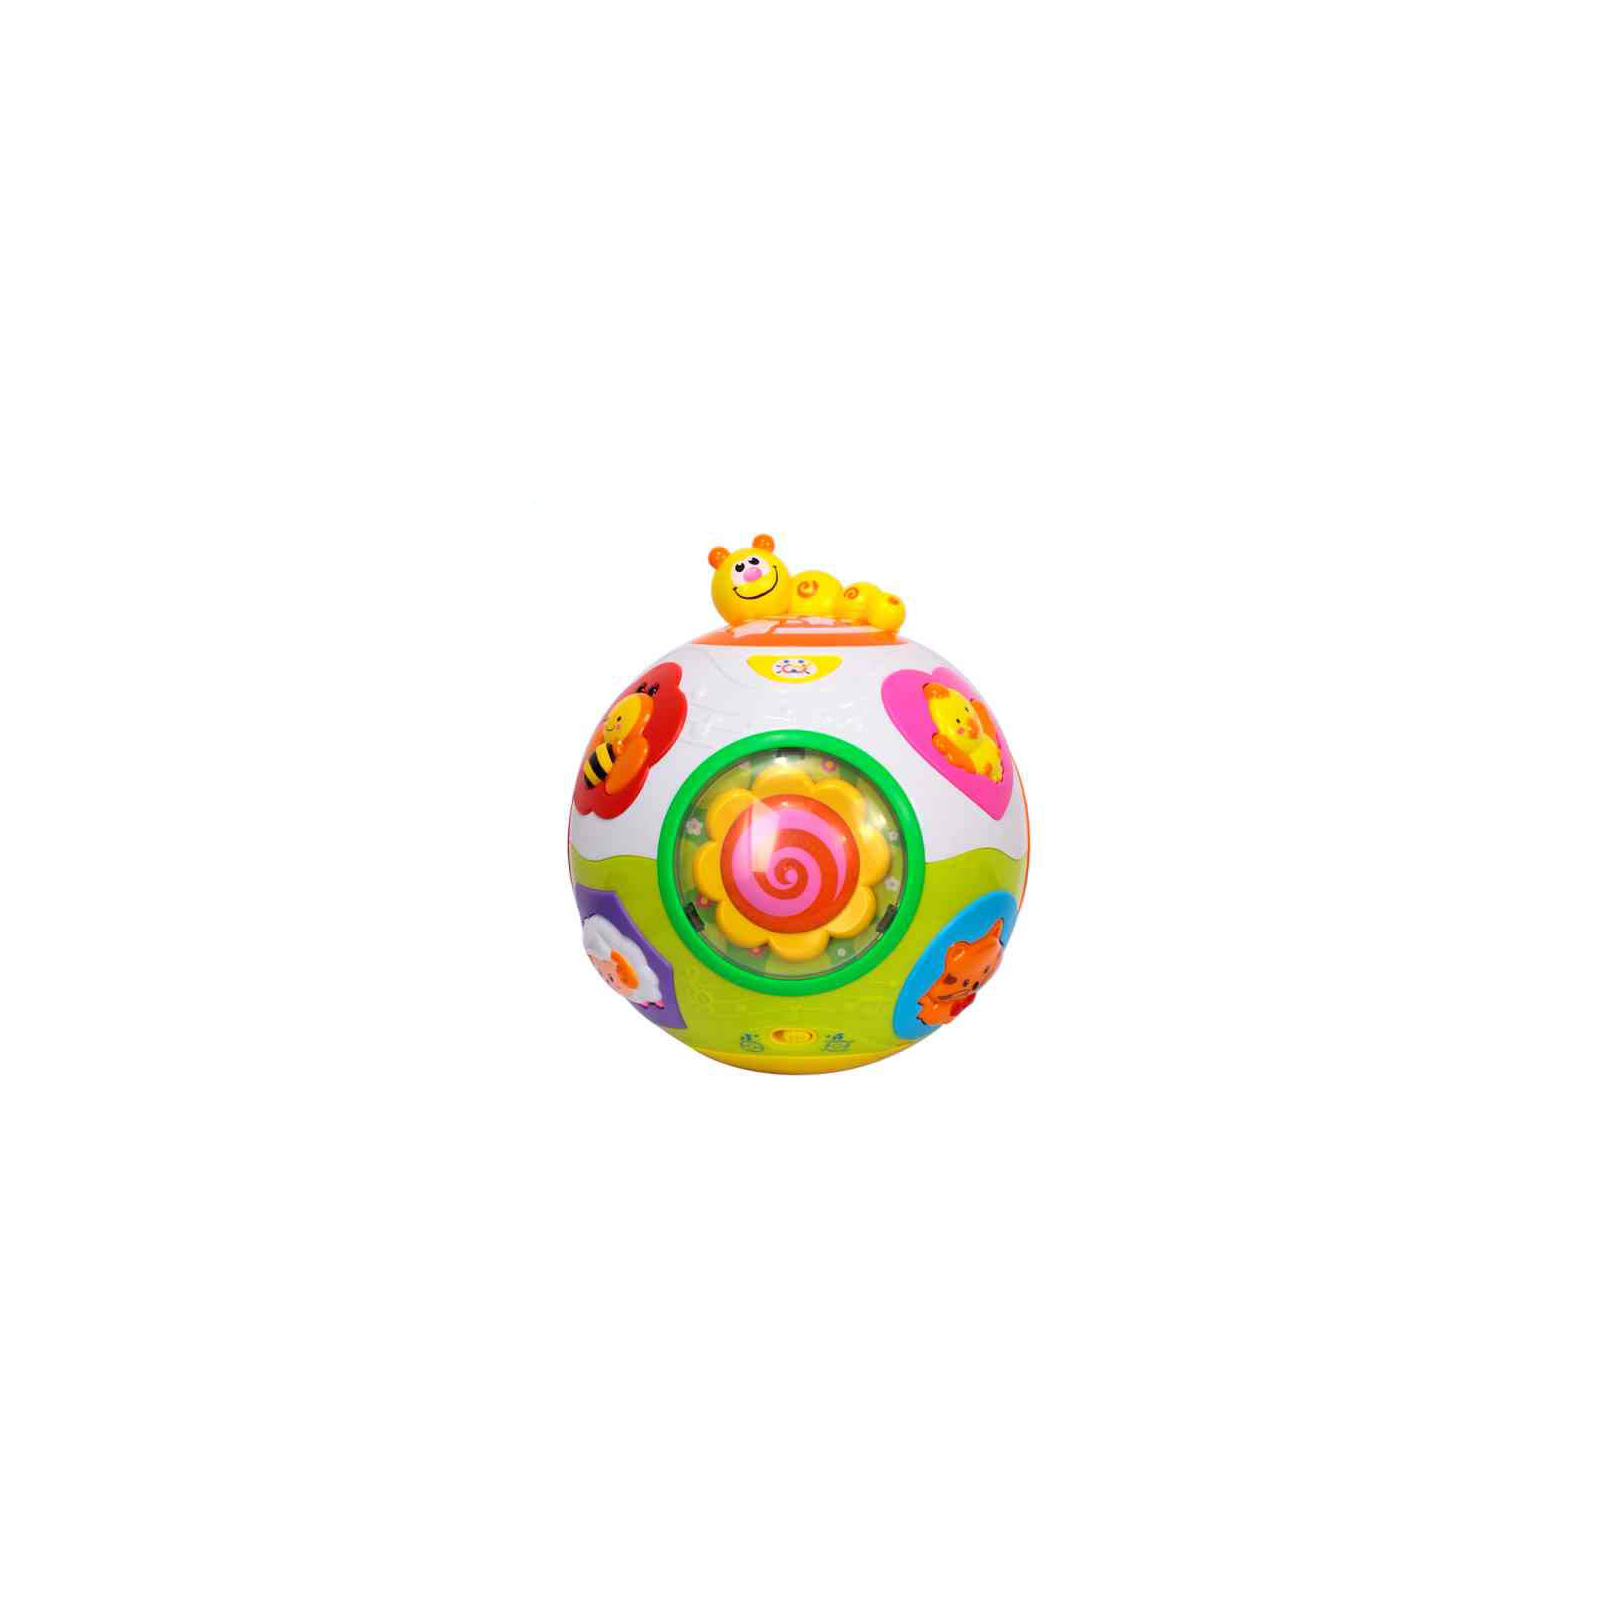 Развивающая игрушка Huile Toys Счастливый мячик (938) изображение 3